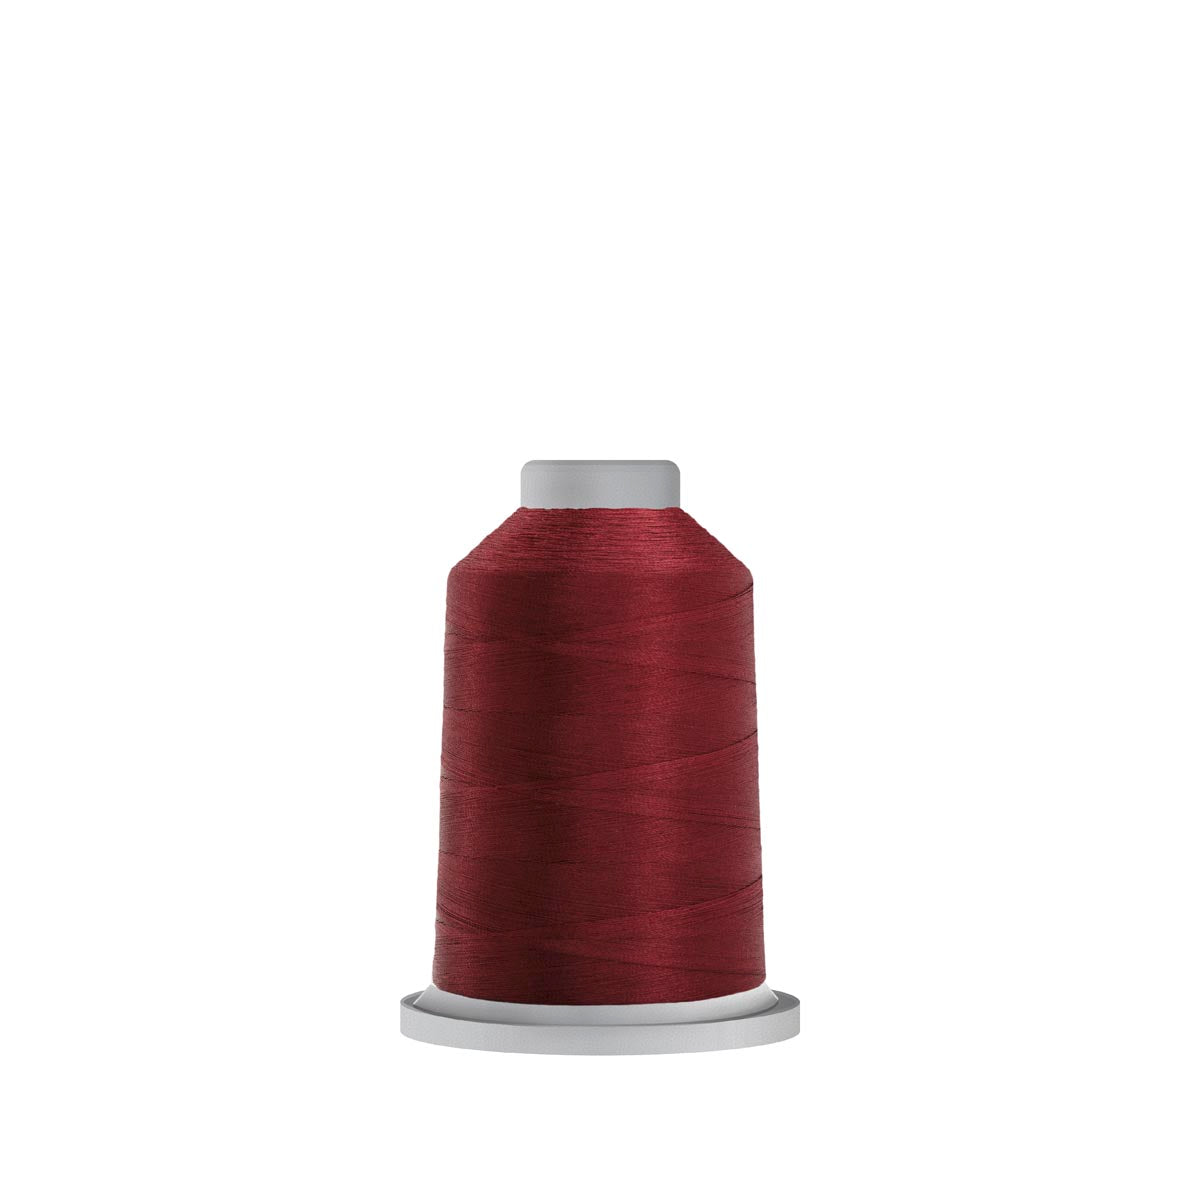 70195 Chianti Glide Polyester Thread - 1,100 yards Mini Spool Fil-Tec